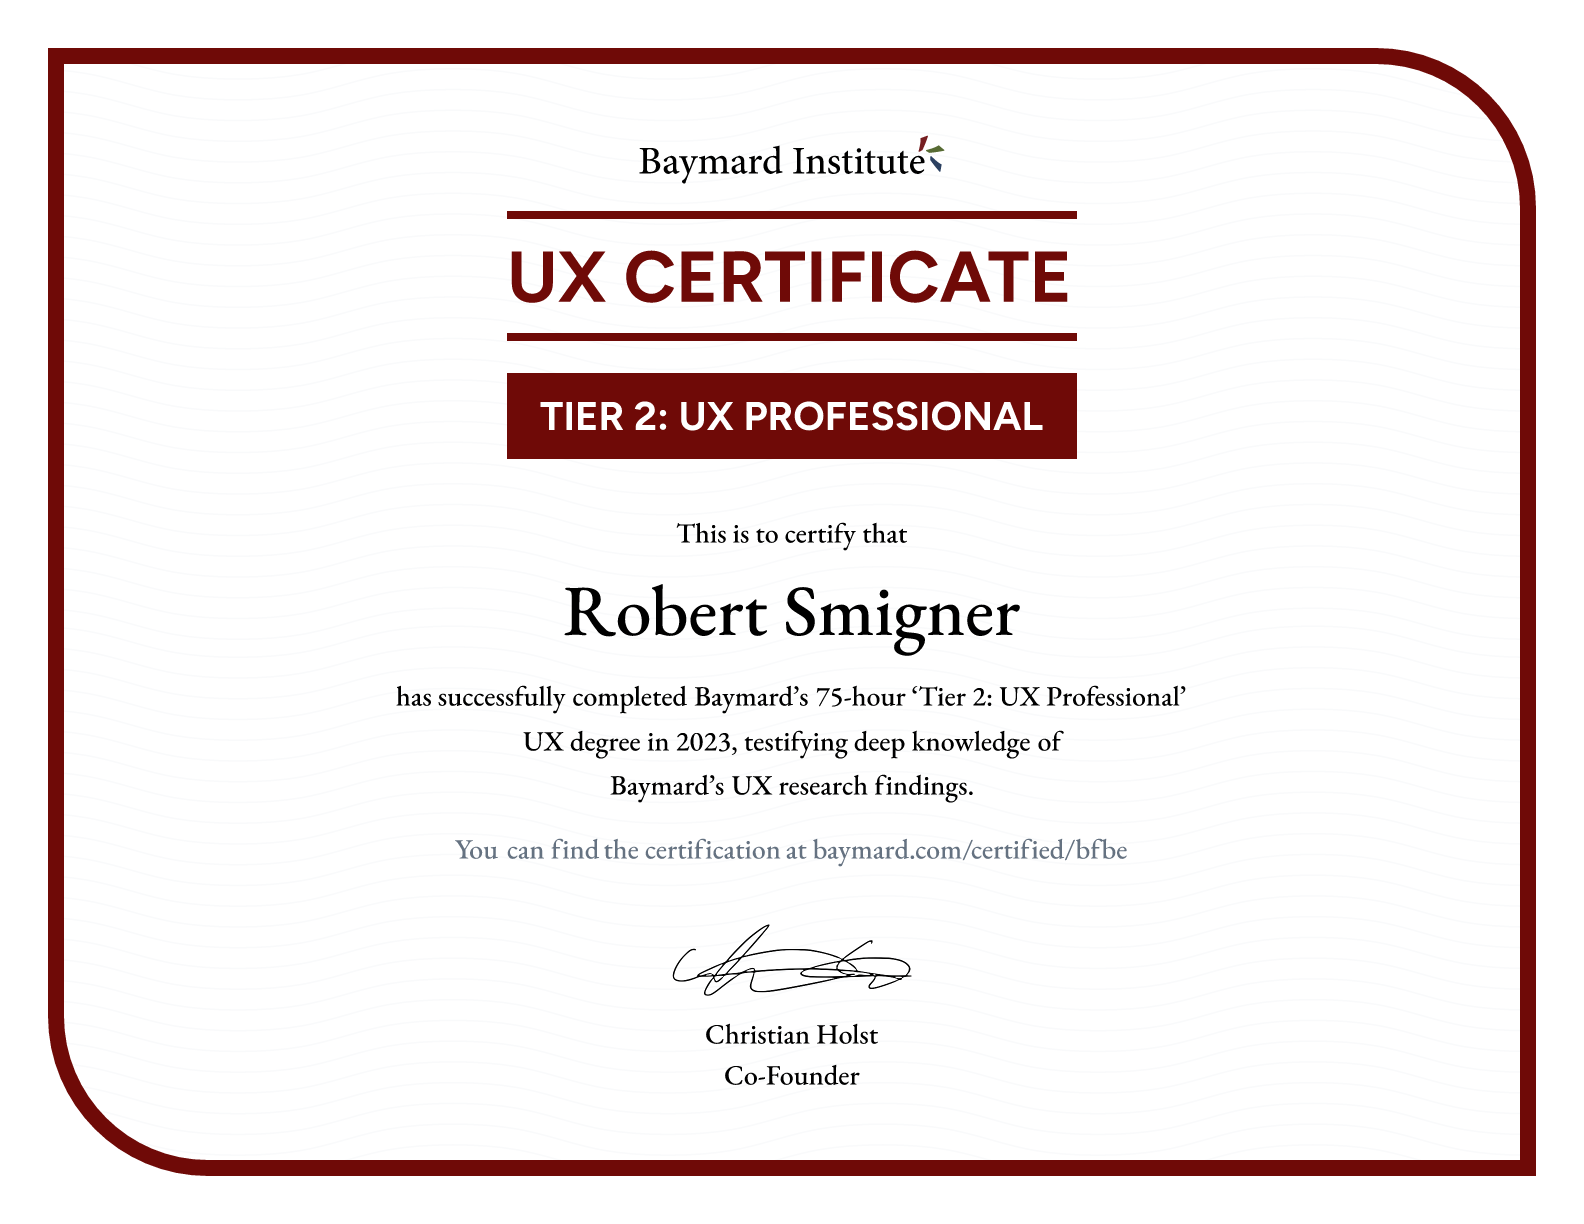 Robert Smigner’s certificate